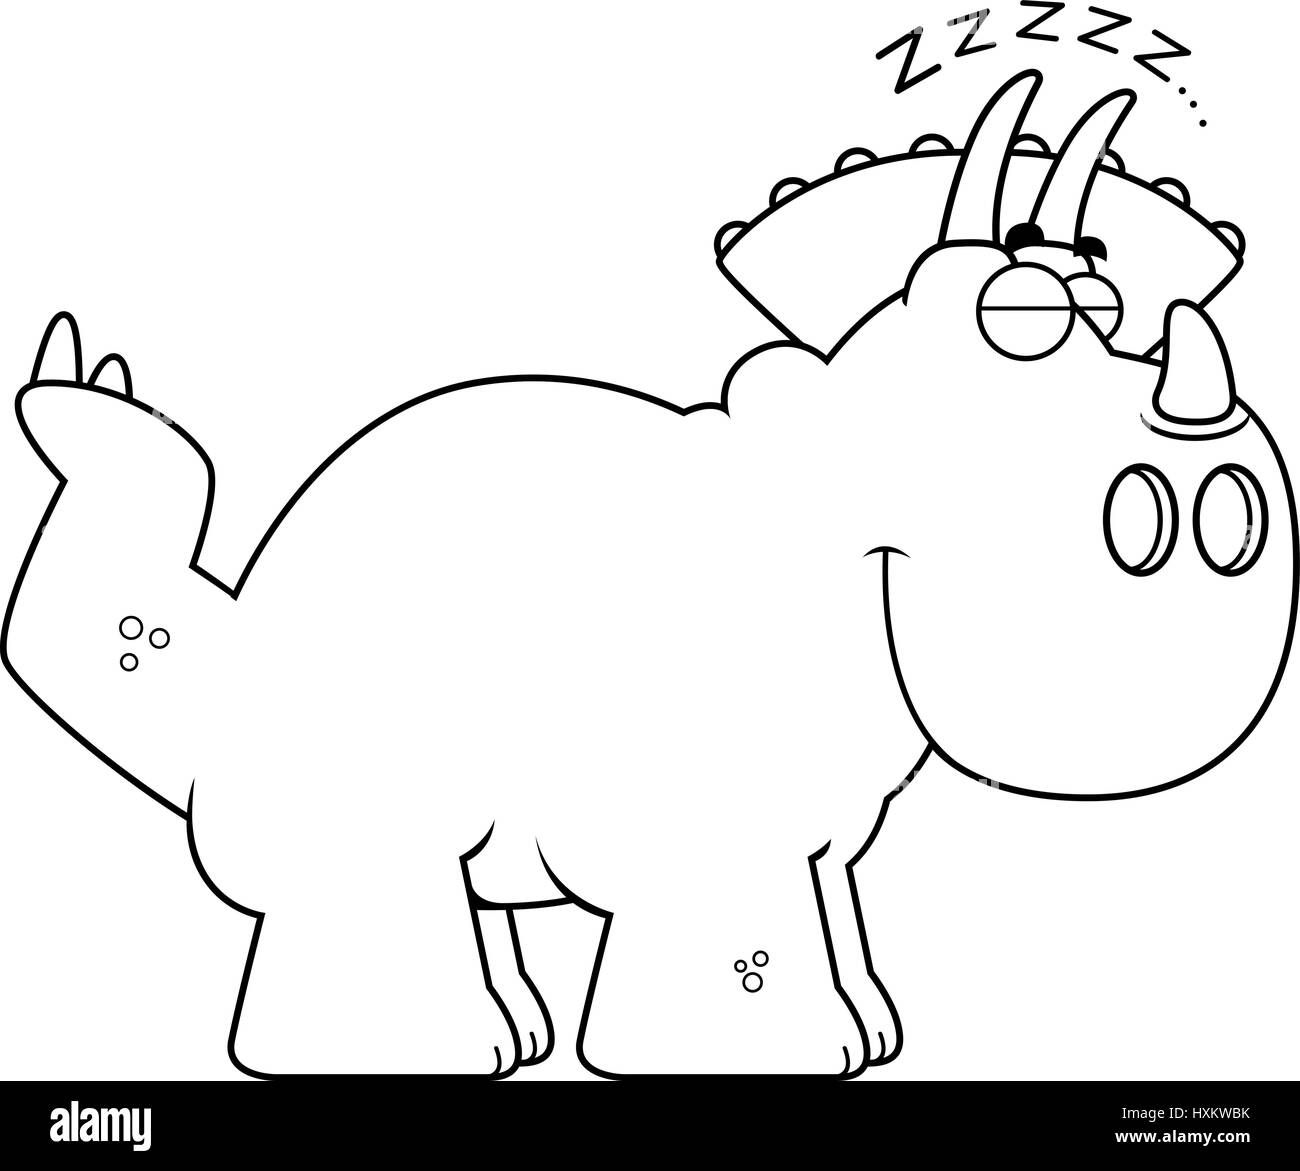 A cartoon illustration of a Triceratops dinosaur sleeping. Stock Vector